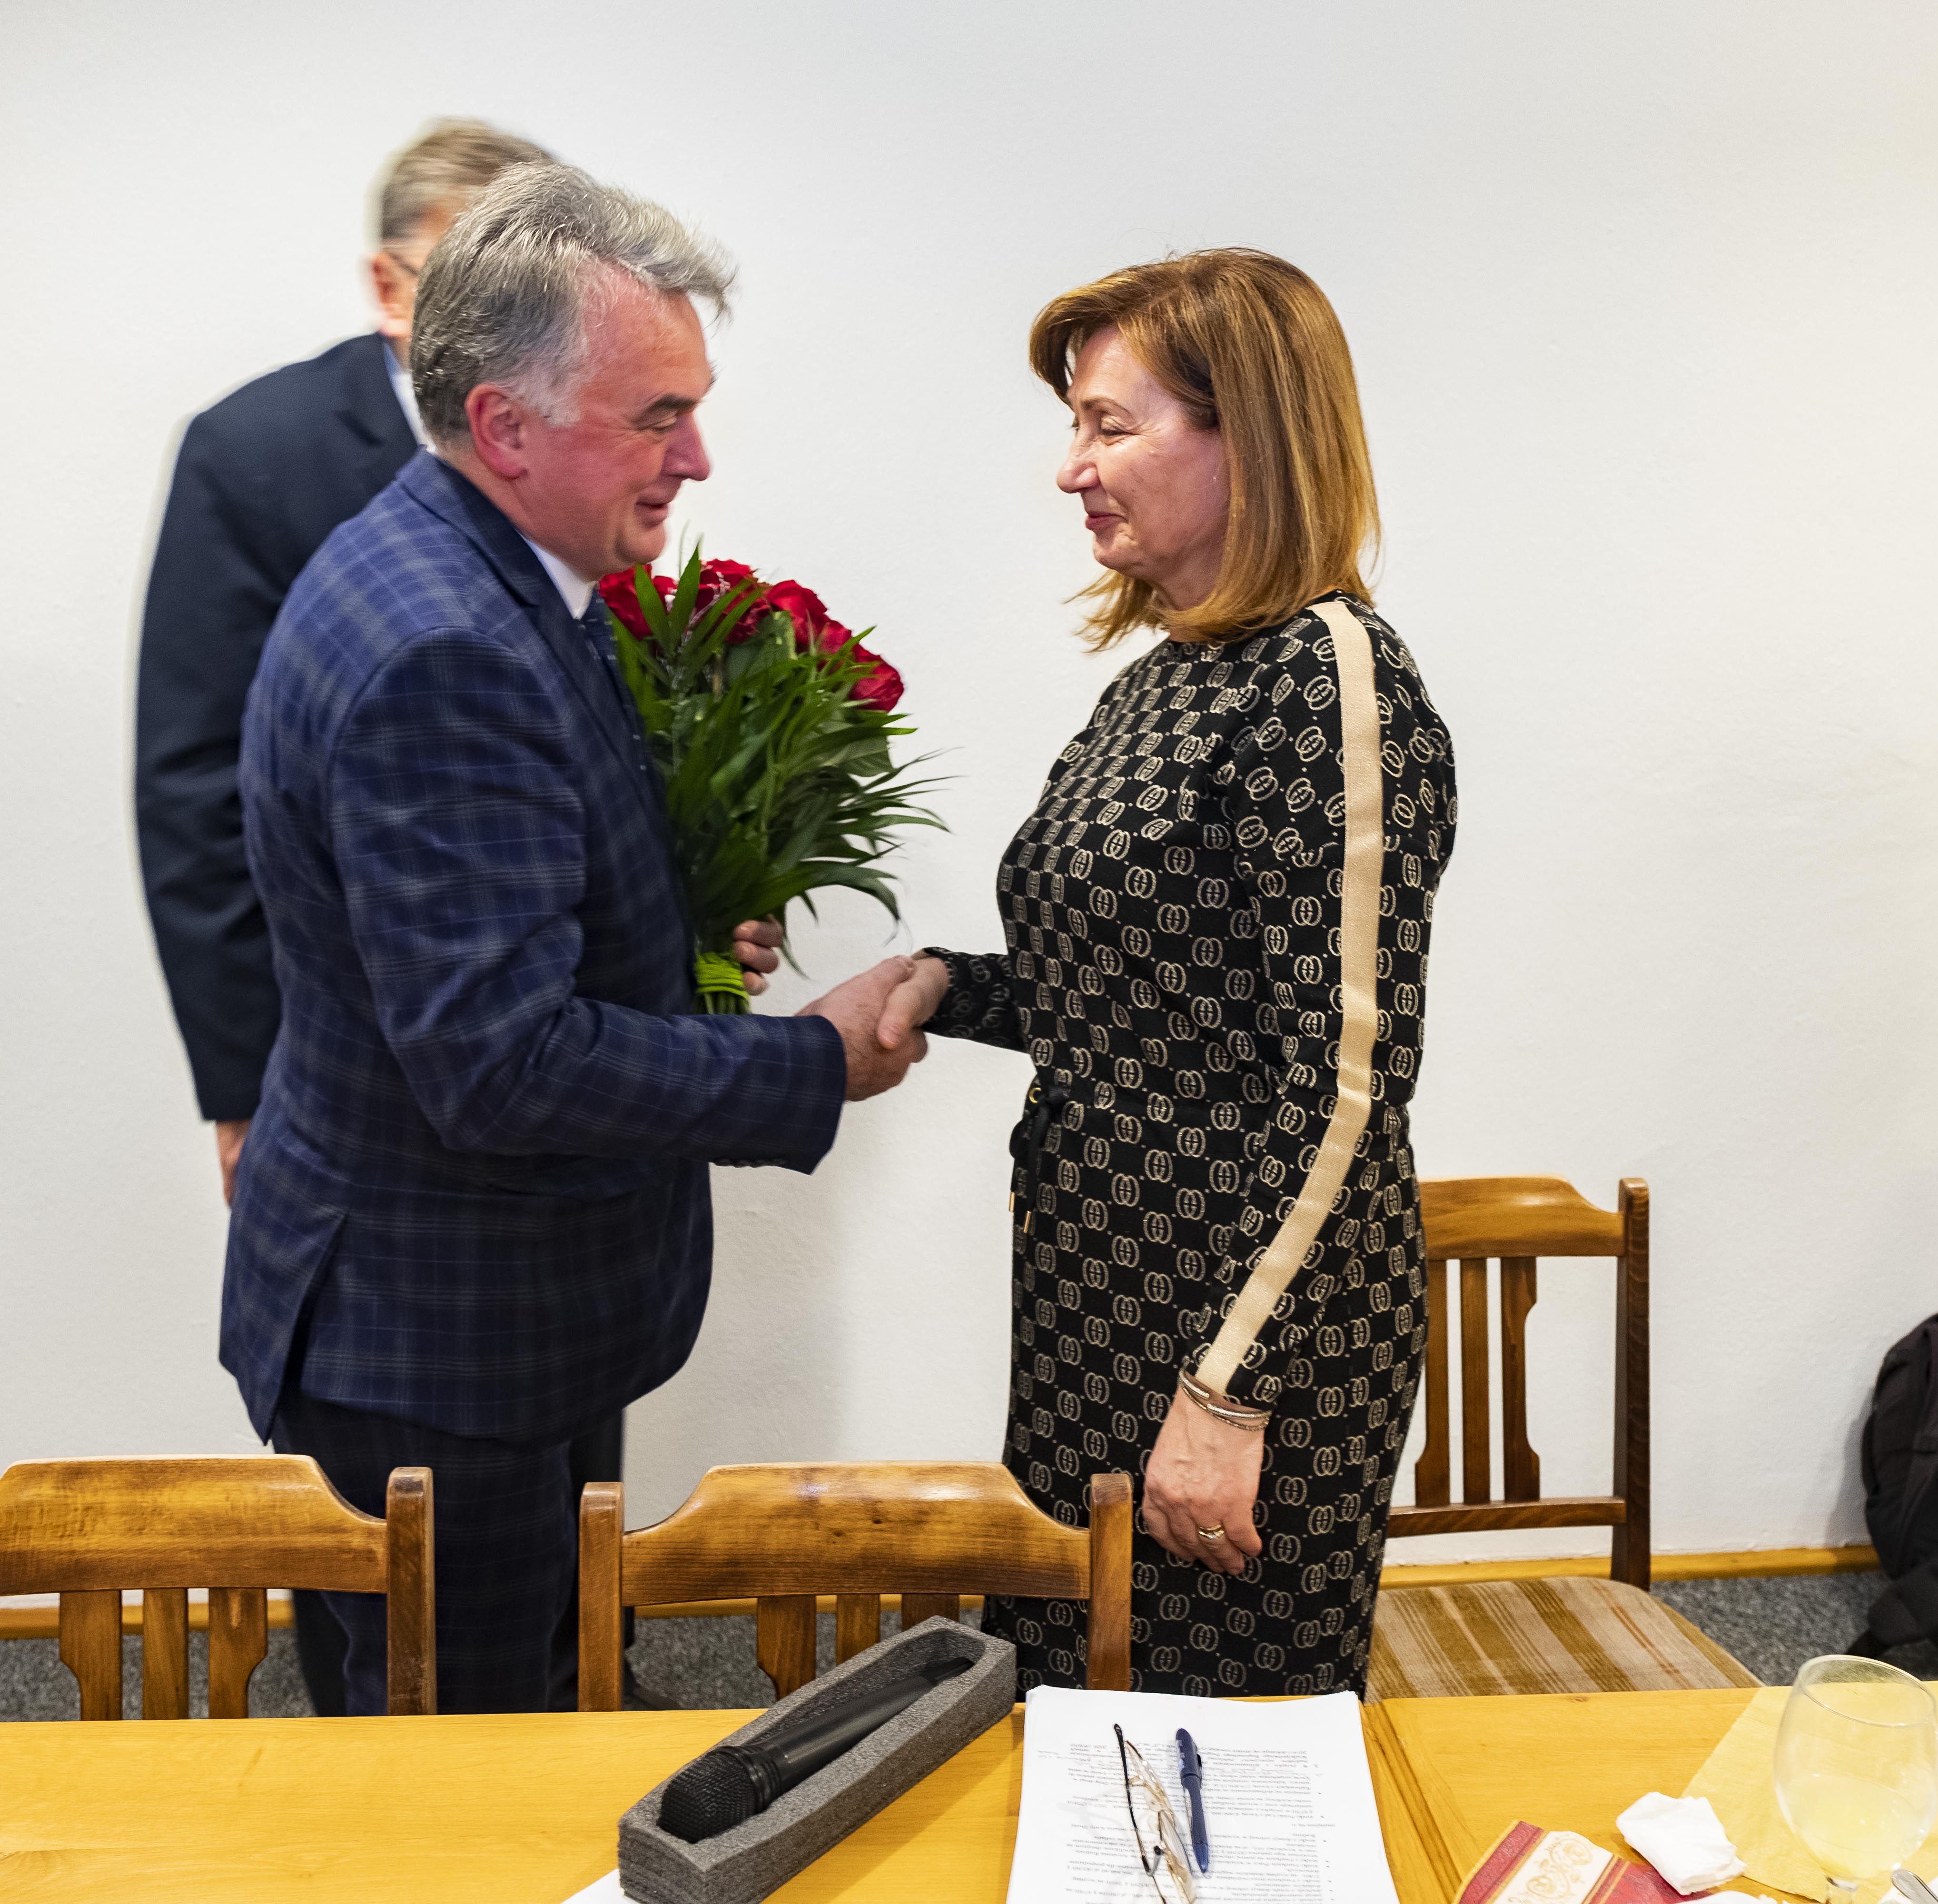 burmistrz Margonina Janusz Piechocki wręczający bukiet kwiatów byłej skarbnik Danucie Bogacz